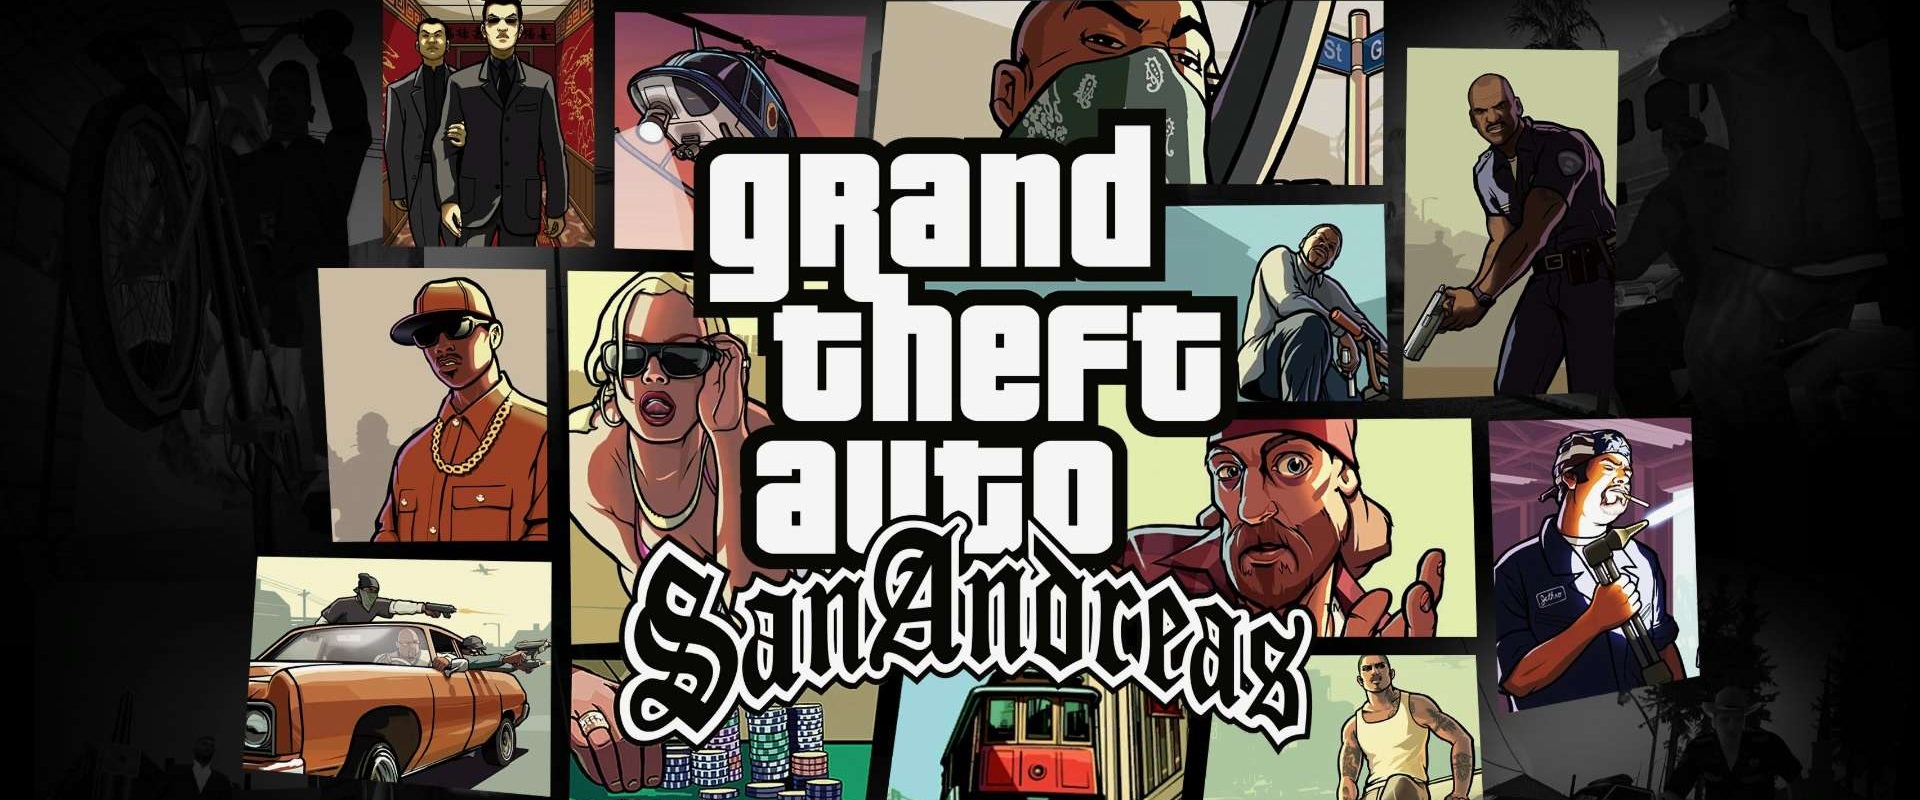 ดาวน์โหลดและเล่น Grand Theft Auto: San Andreas บน PC ด้วย NoxPlayer โปรแกรมจำลองฟรี